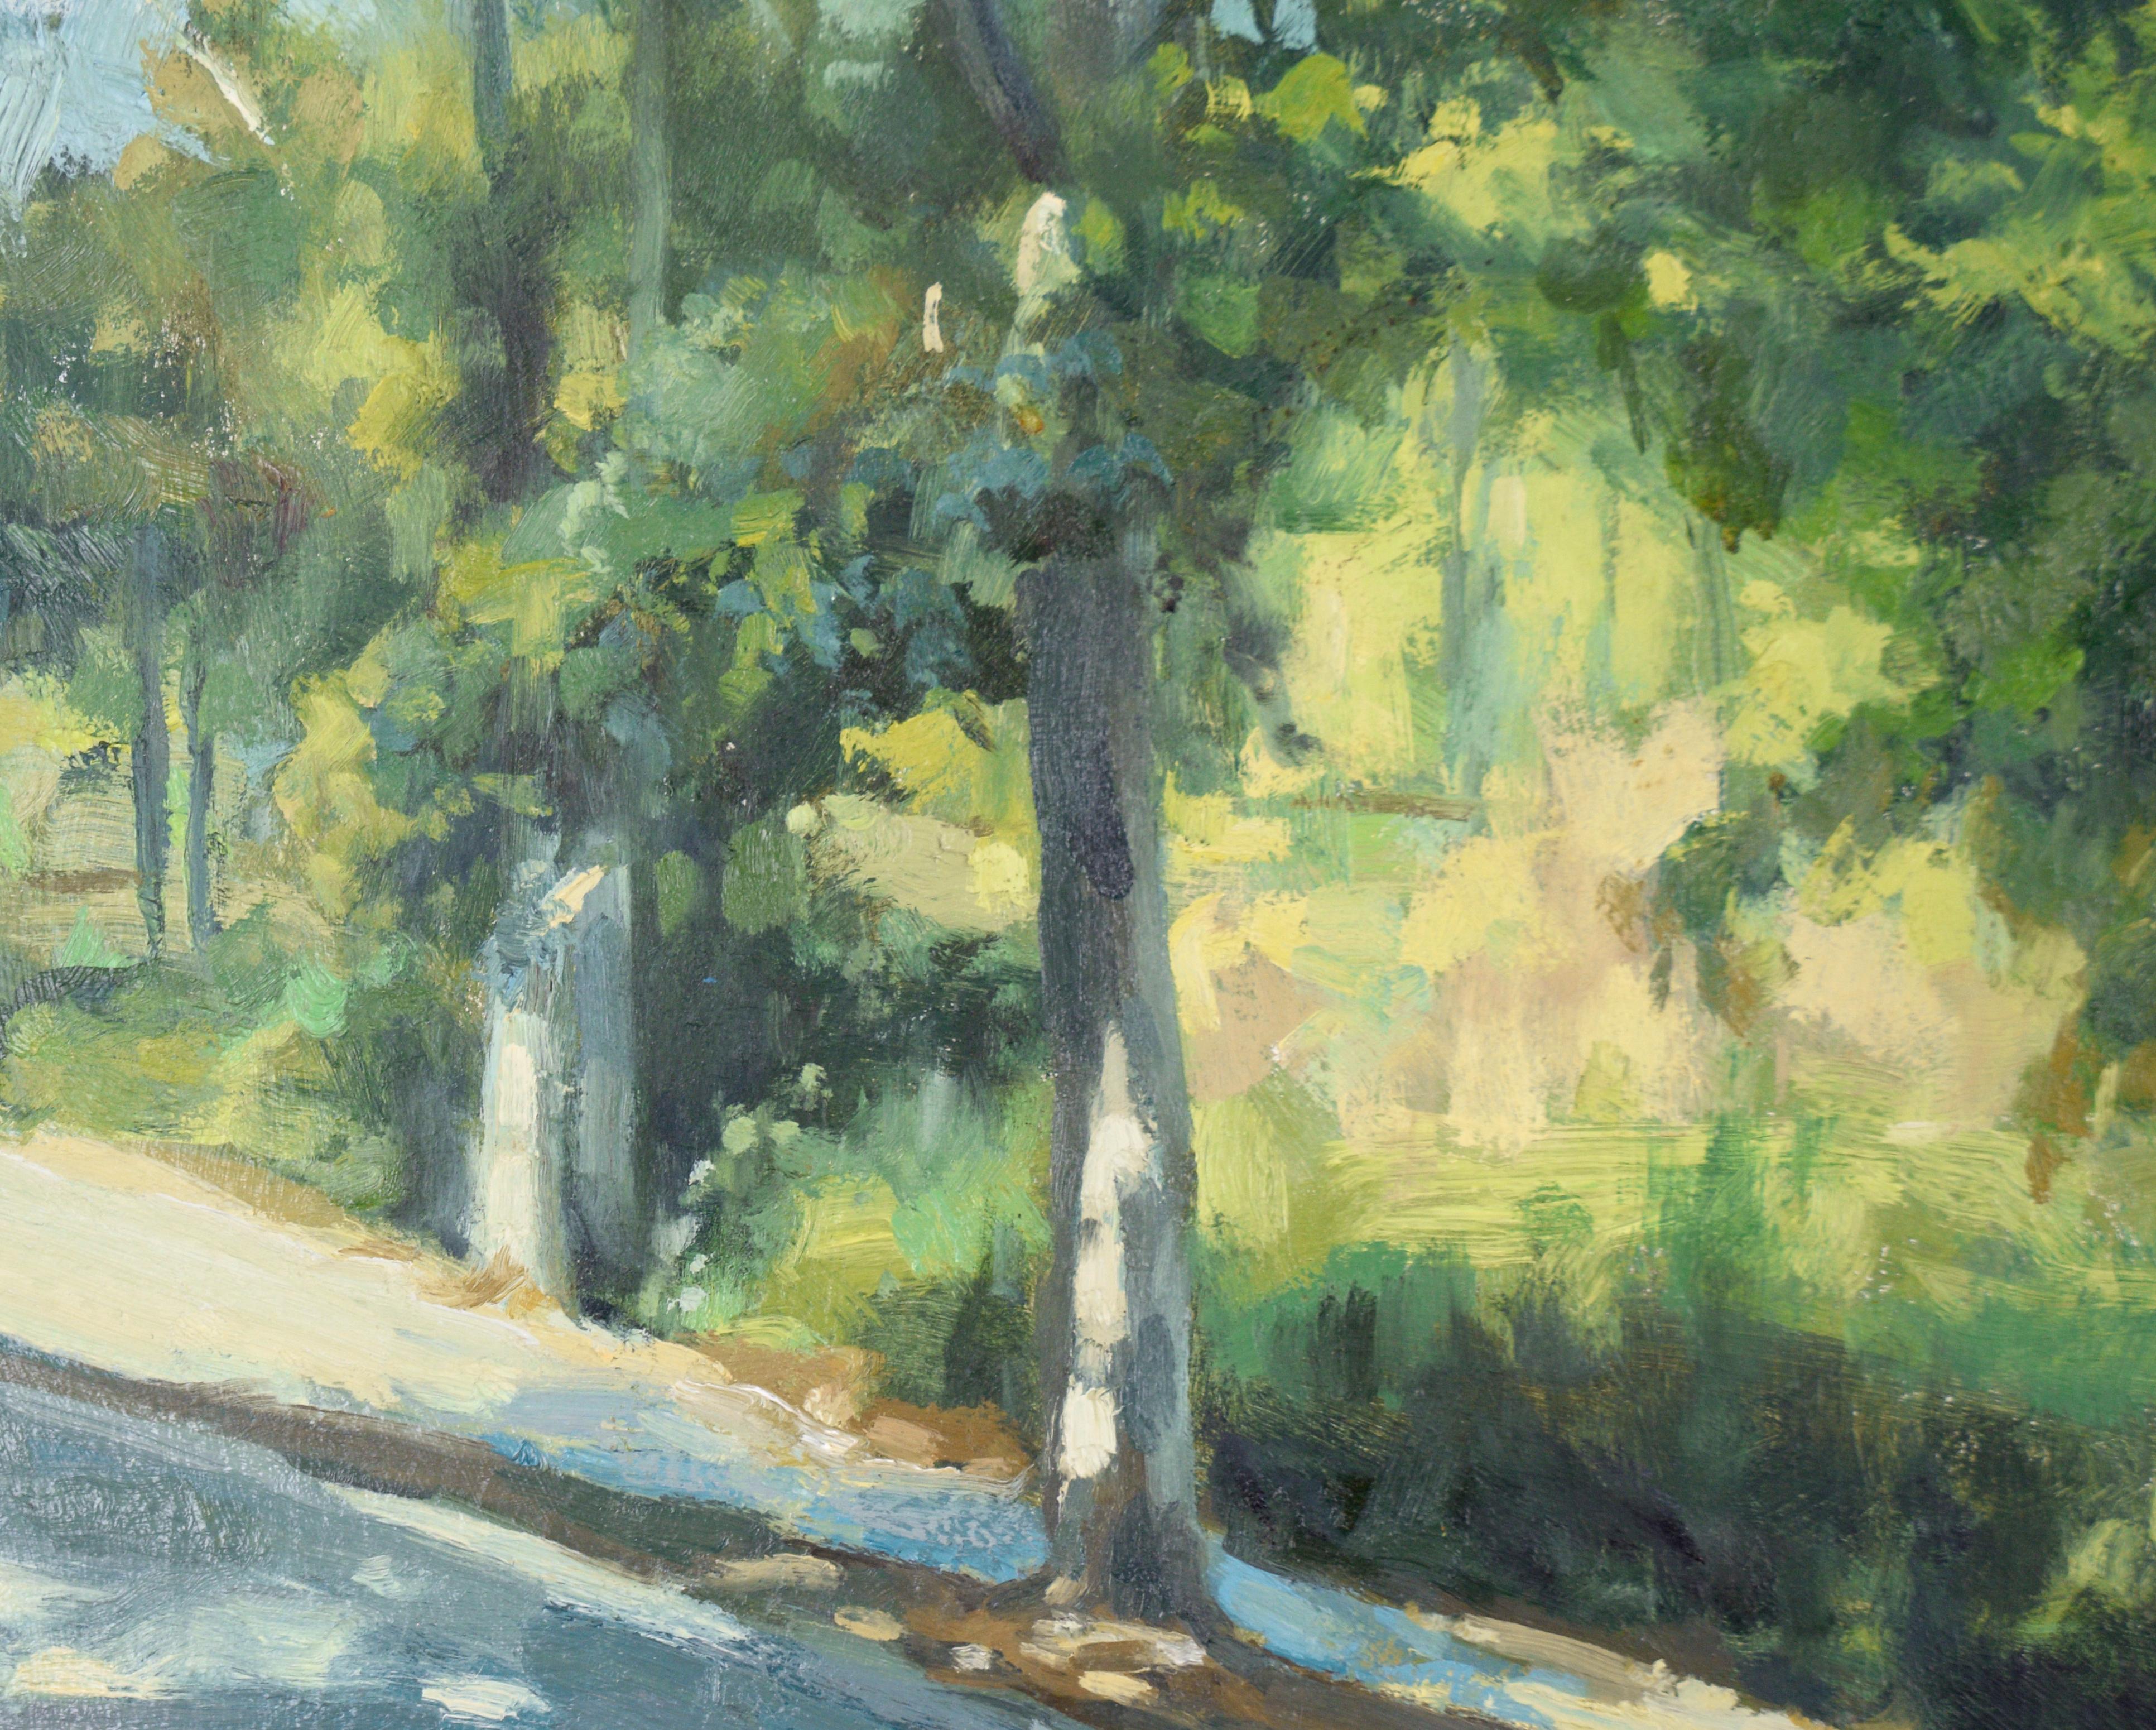 Le trottoir le long du parc - Paysage à l'huile sur toile - Gris Landscape Painting par Gholam Yunessi